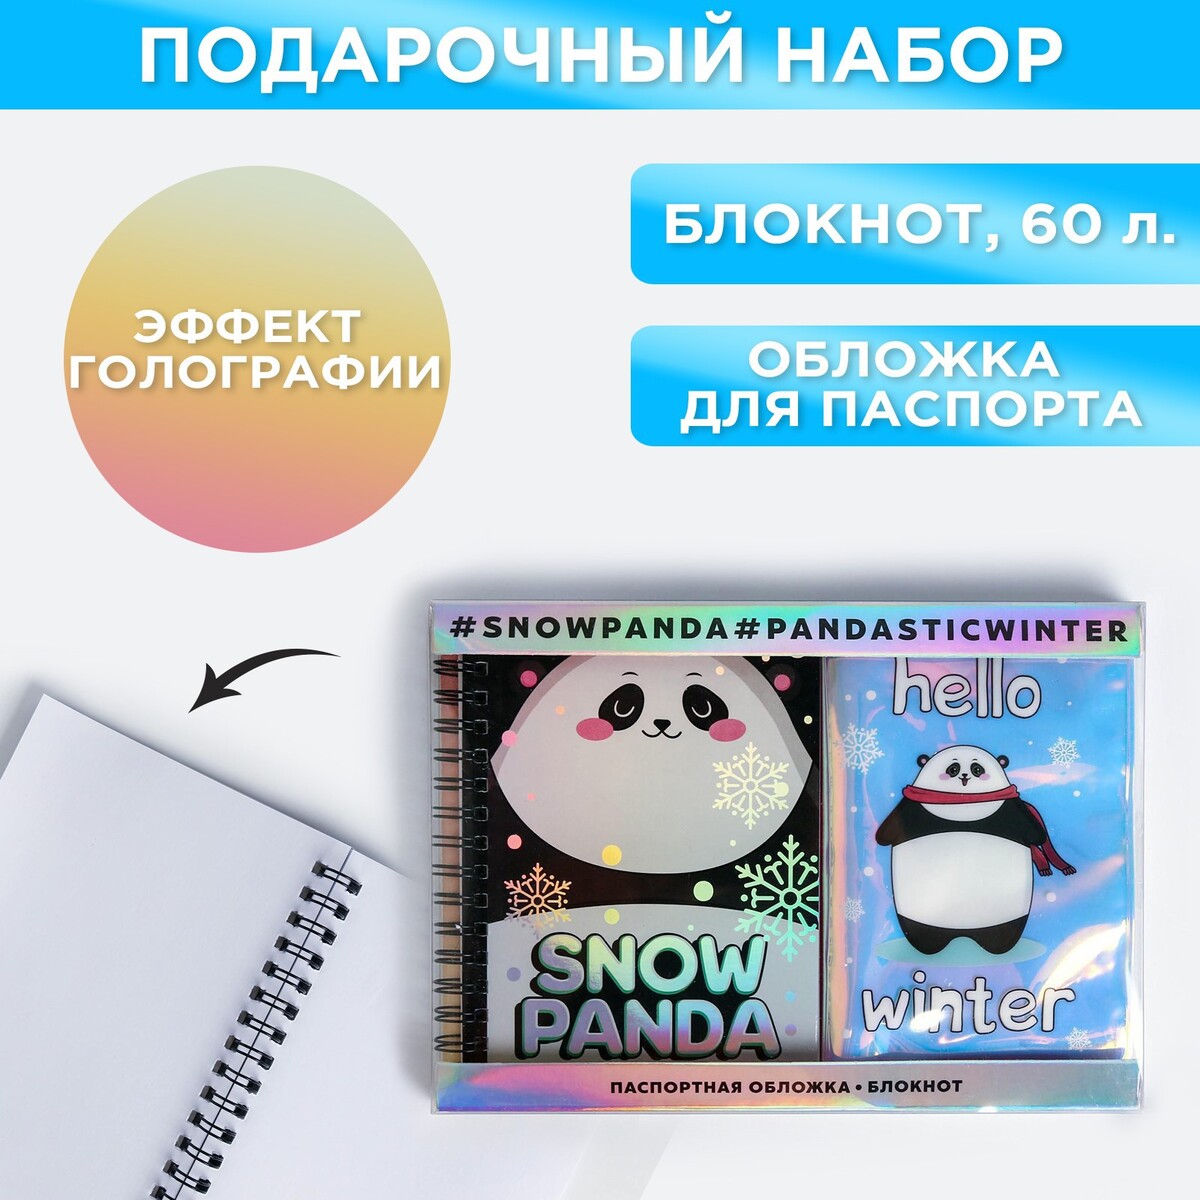 Подарочный набор: голографический блокнот и обложка snow panda for panda 39 lcd tv 0y385d09 zc21fg 01 303wy385031 oy385d09 zc21fg 01 le39f88s le39d80sa le39d80 39f51s1 le39p01